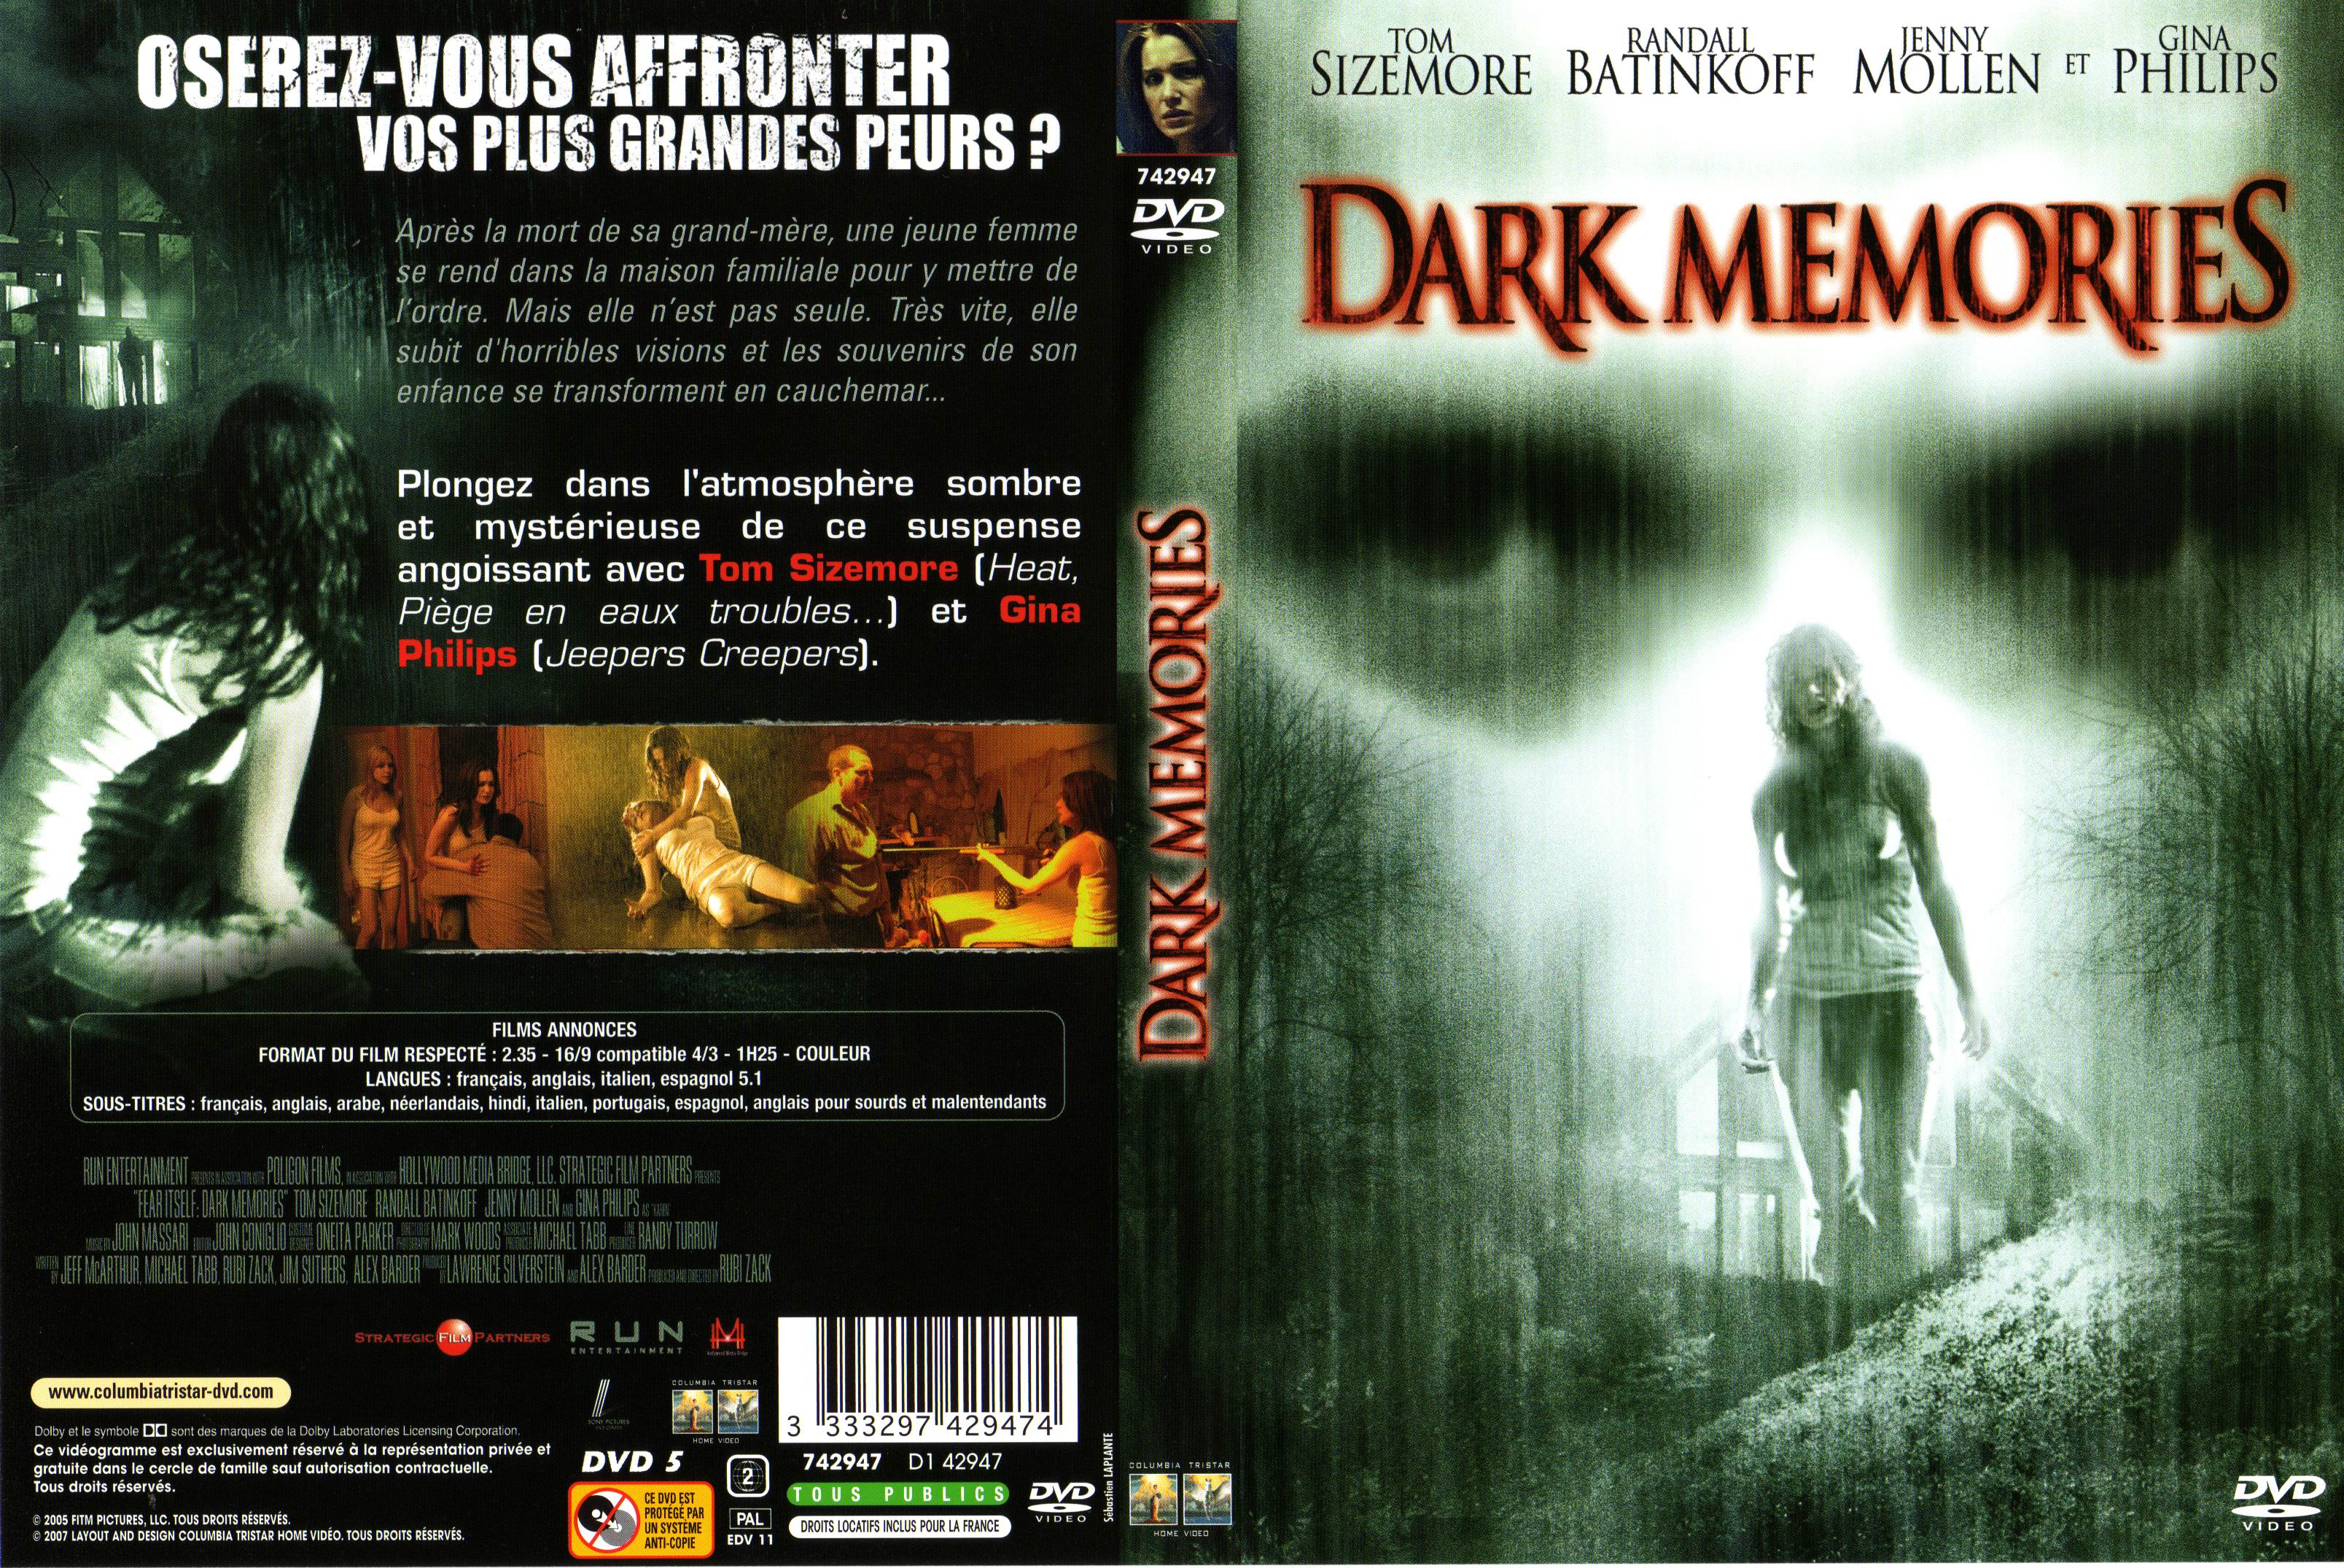 Jaquette DVD de Dark memories - Cinéma Passion